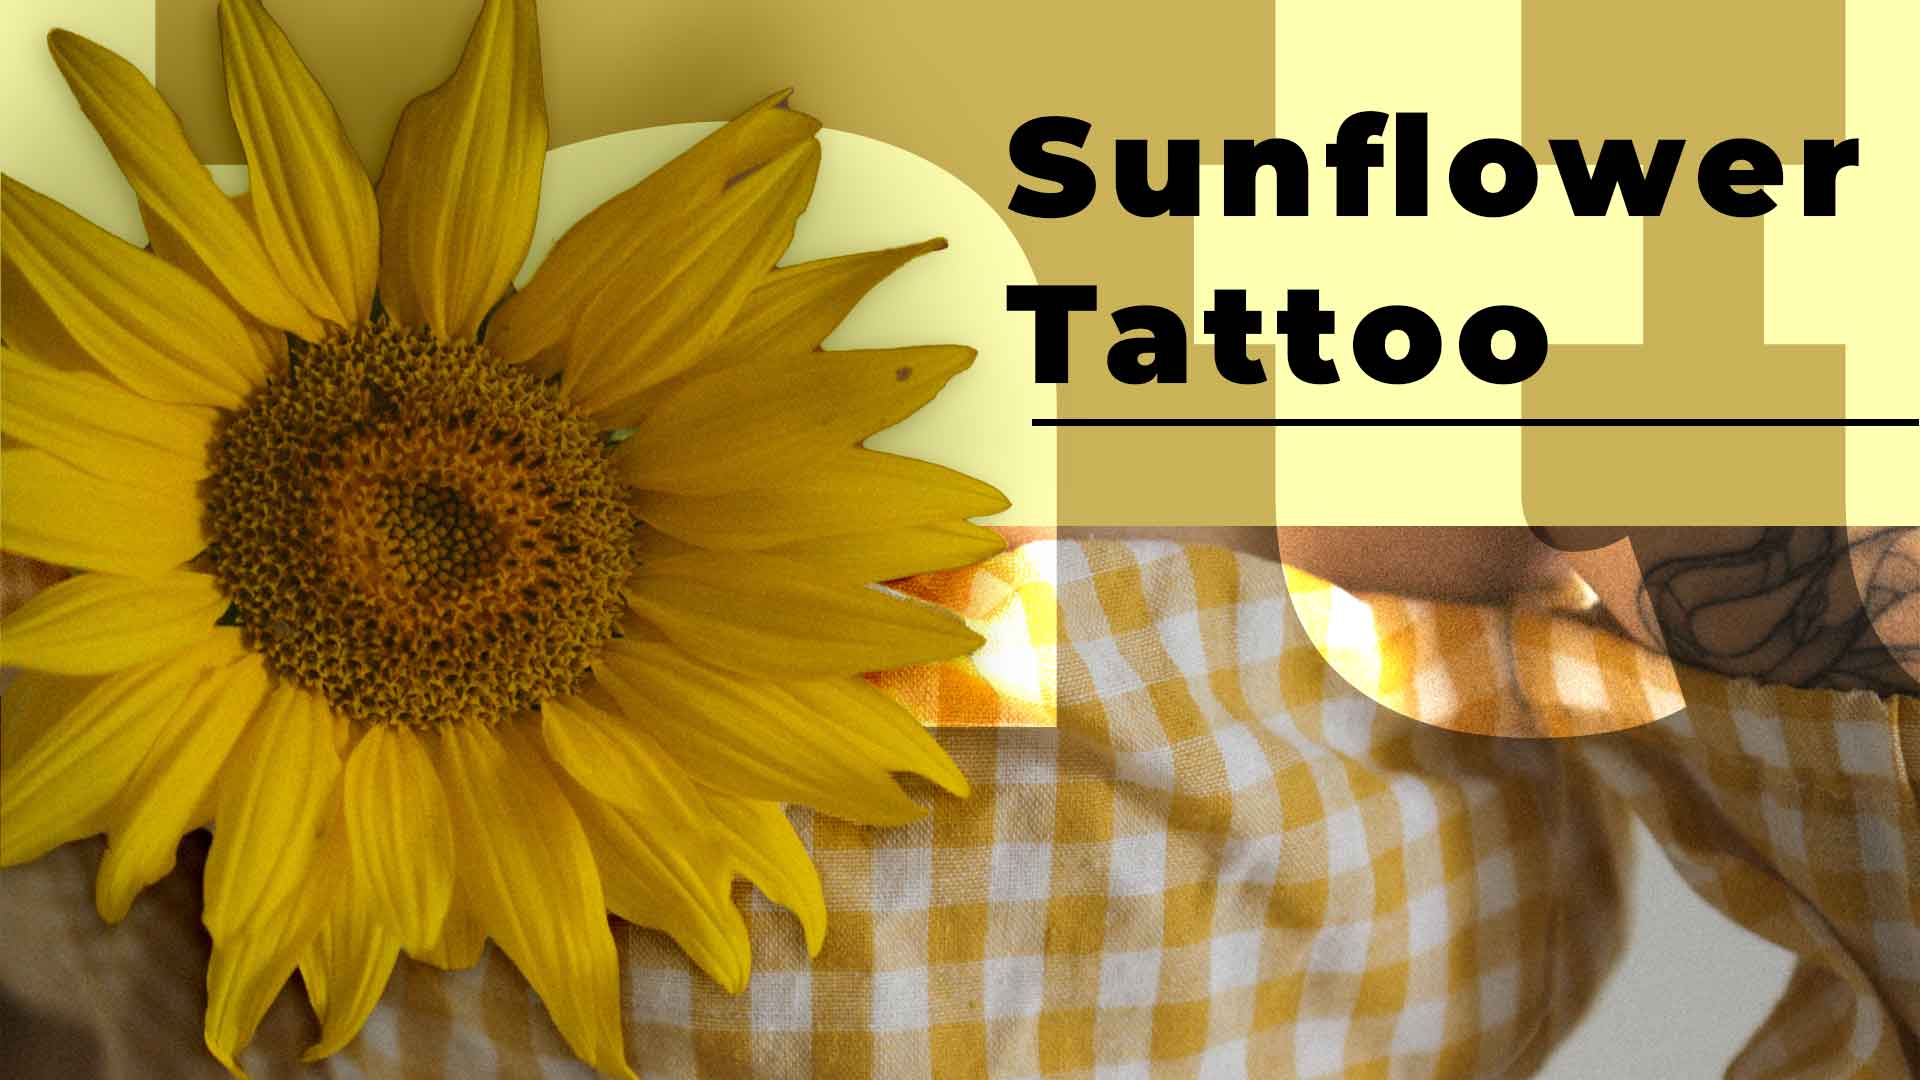 Sunflower Tattoos: A Closer Look at Flower Tattoos